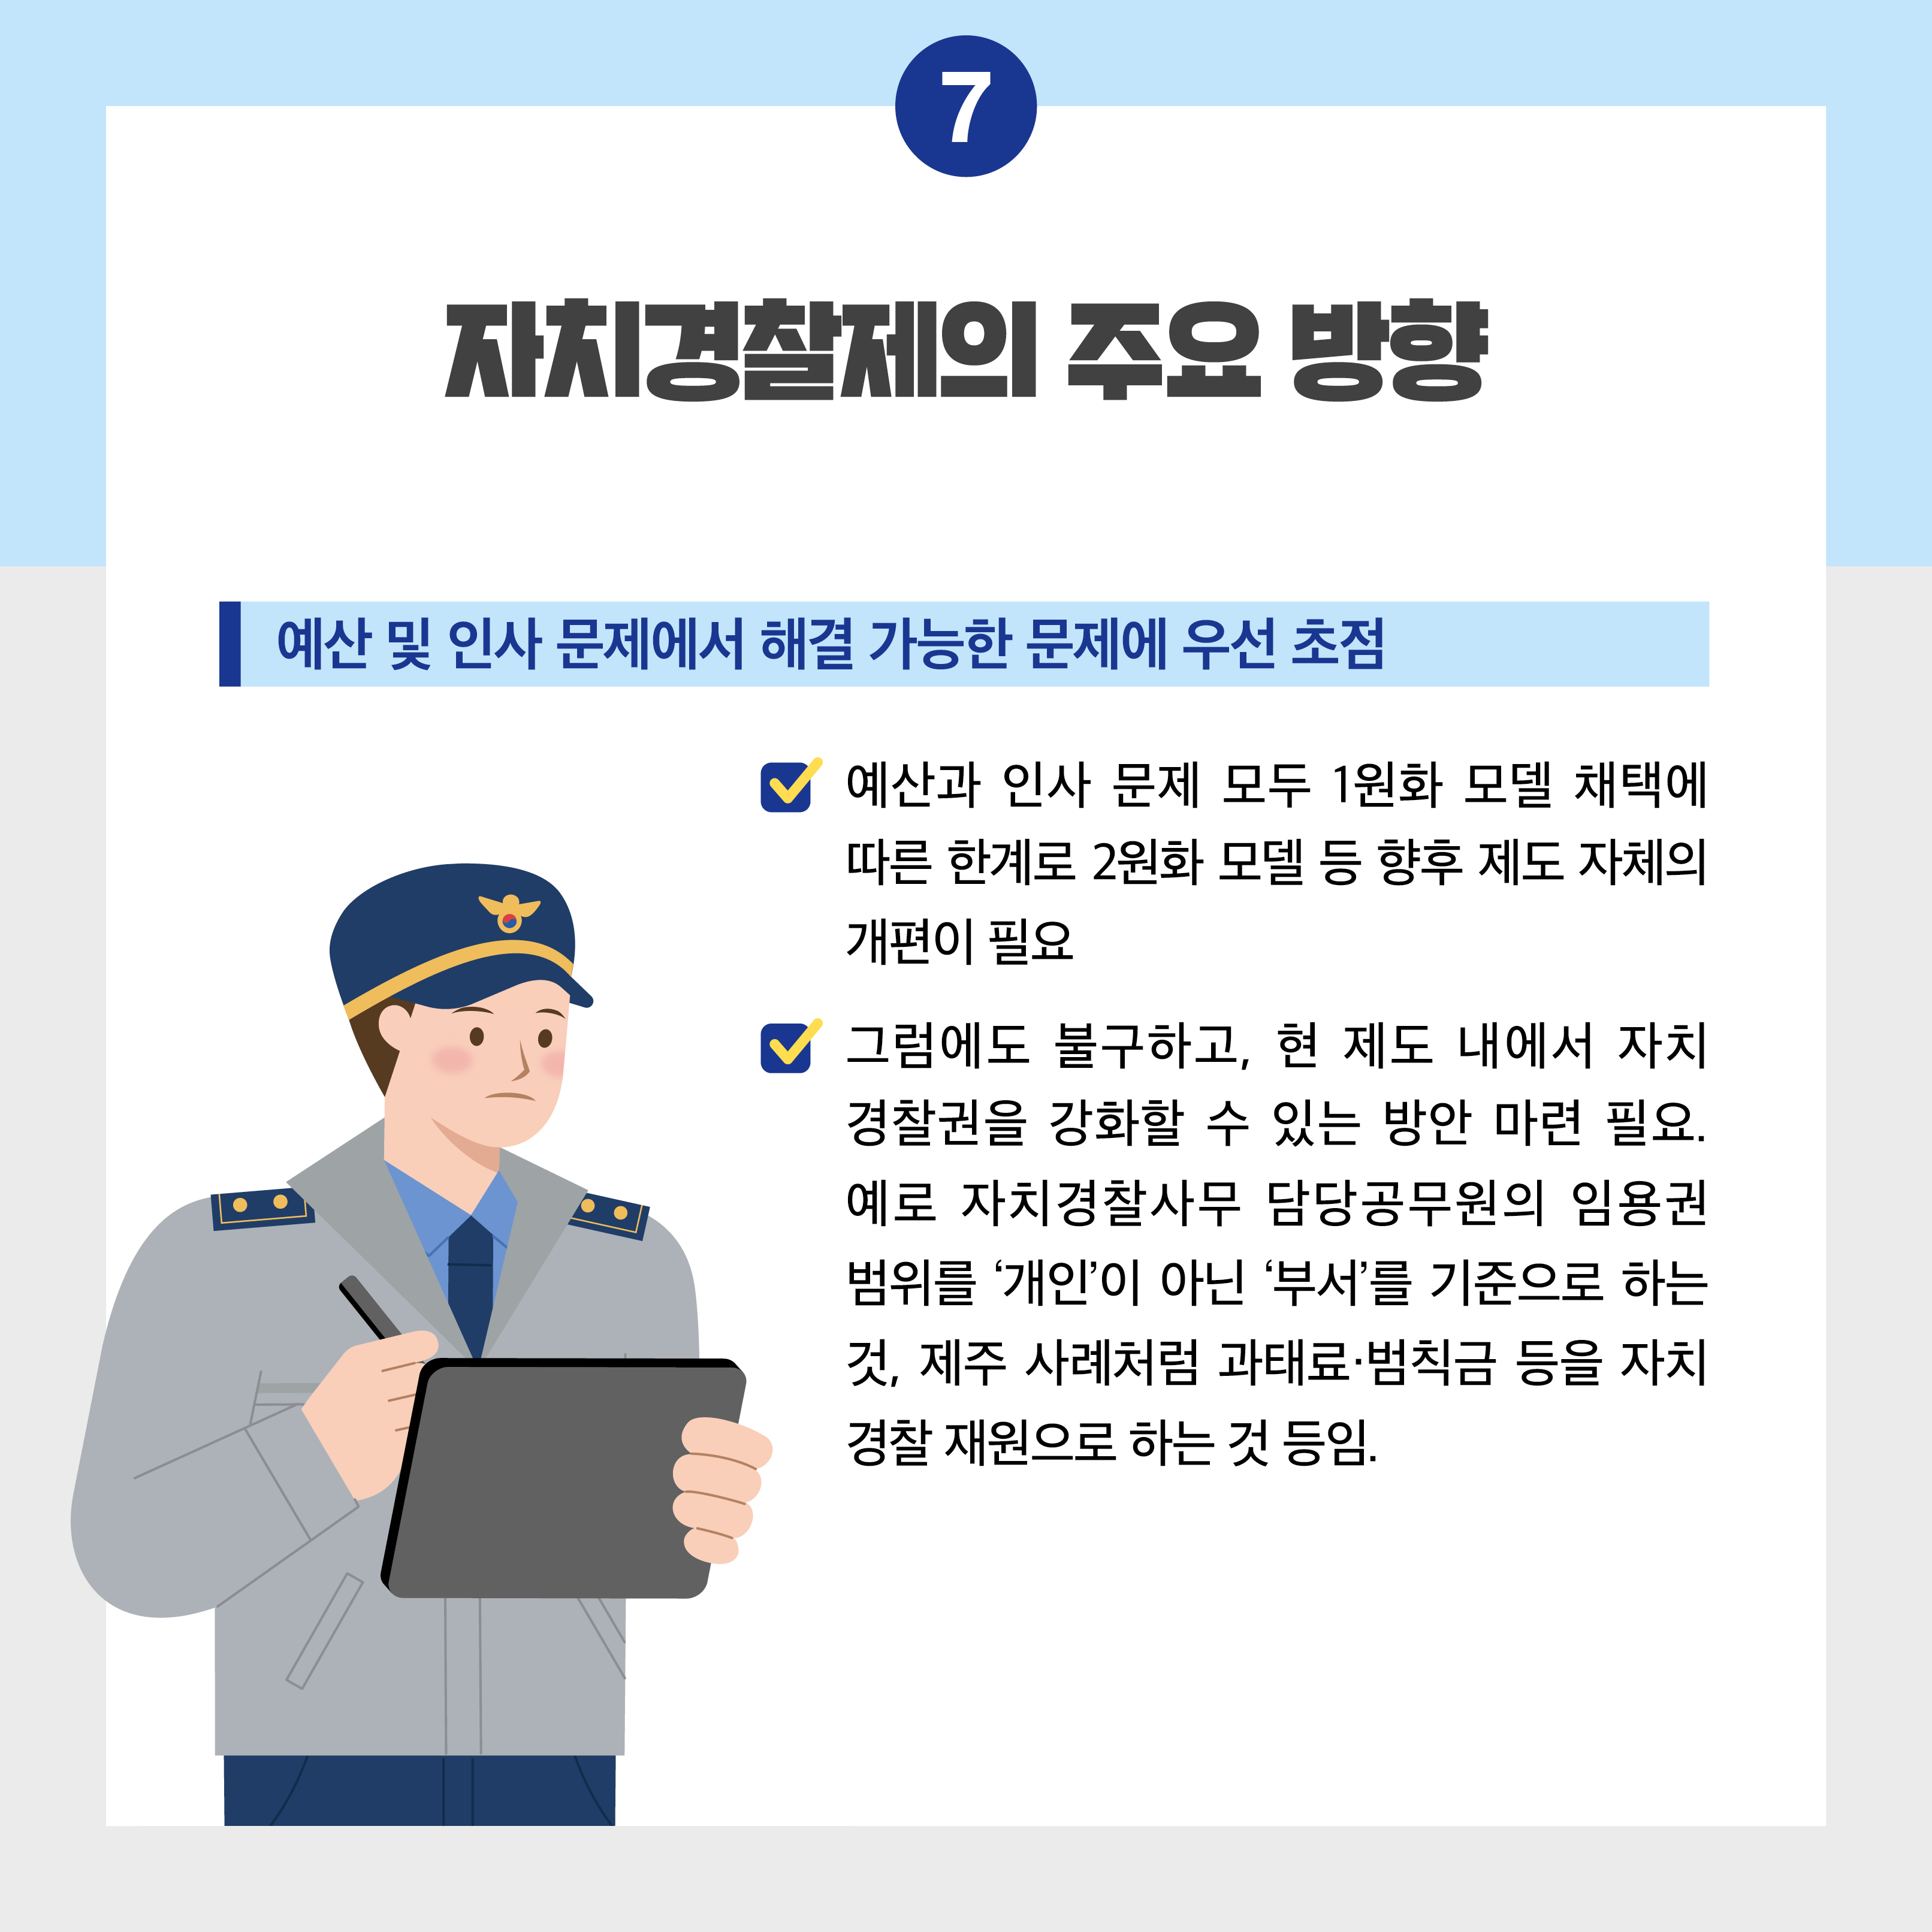 한국형 자치경찰제 도입 효과에 대한 자치경찰위원회와 자치경찰사무 담당 공무원의 인식차이가 있을까요? 사진8